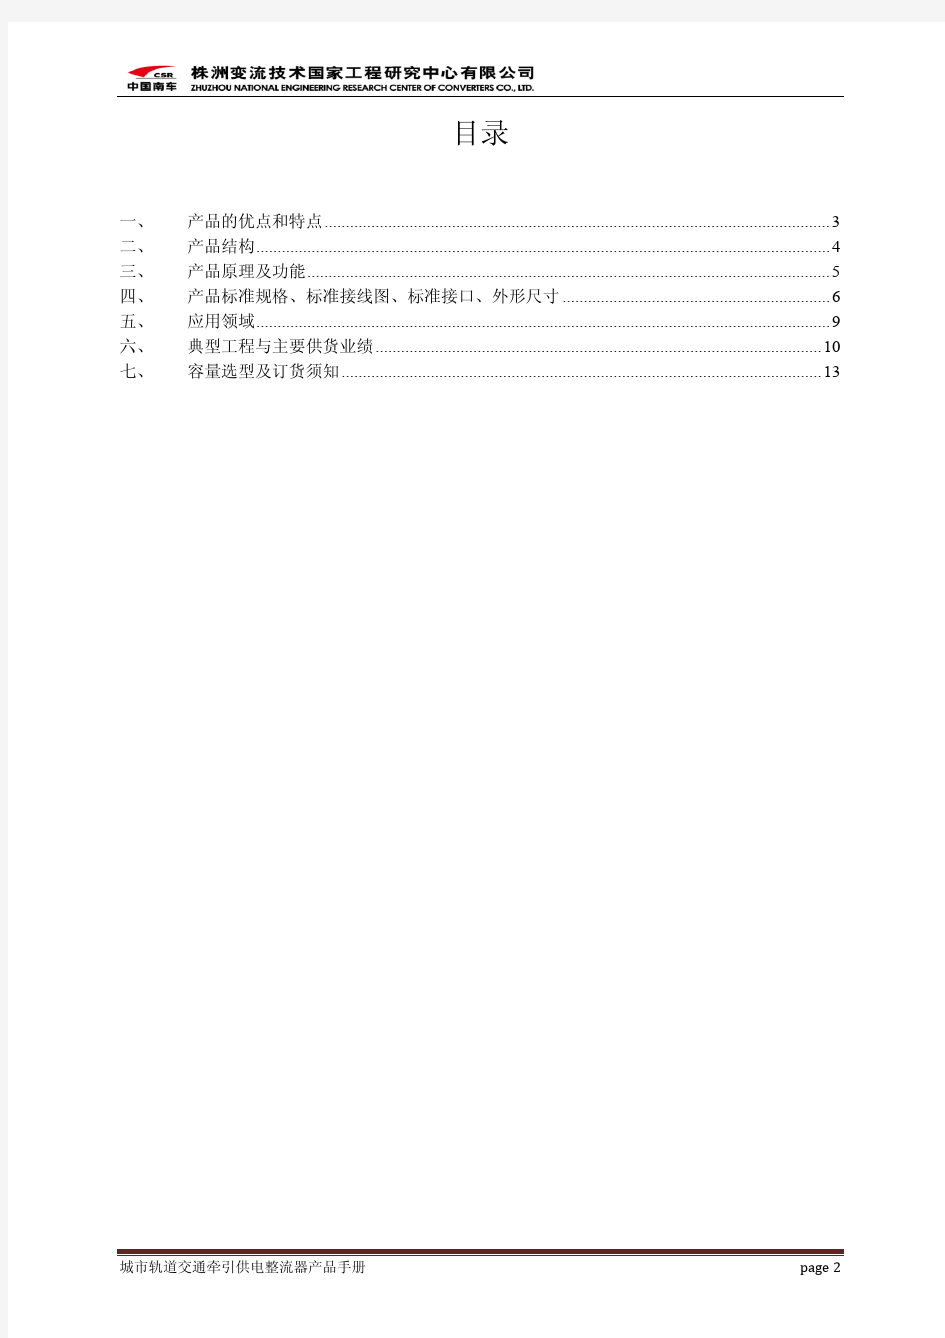 整流器产品手册-2012